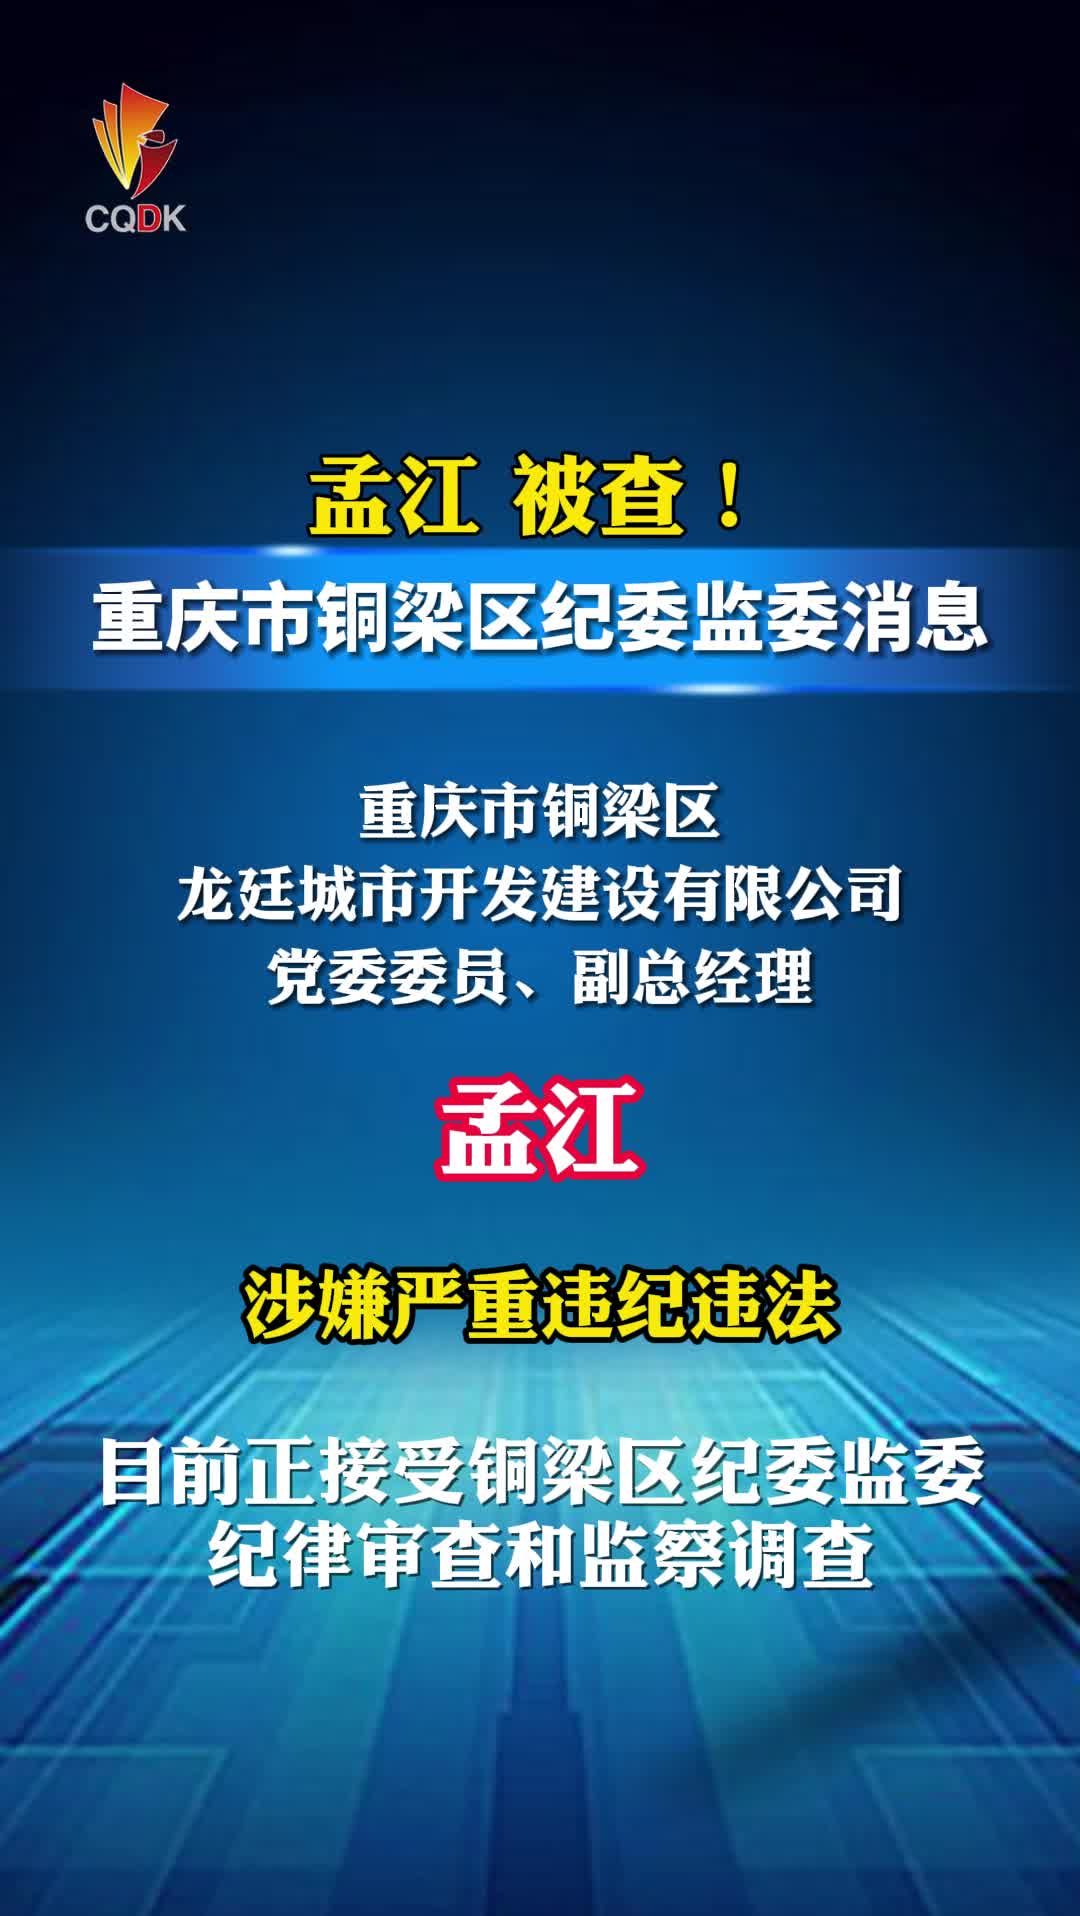 重庆铜梁龙廷城市开发建设有限公司副总经理孟江被查